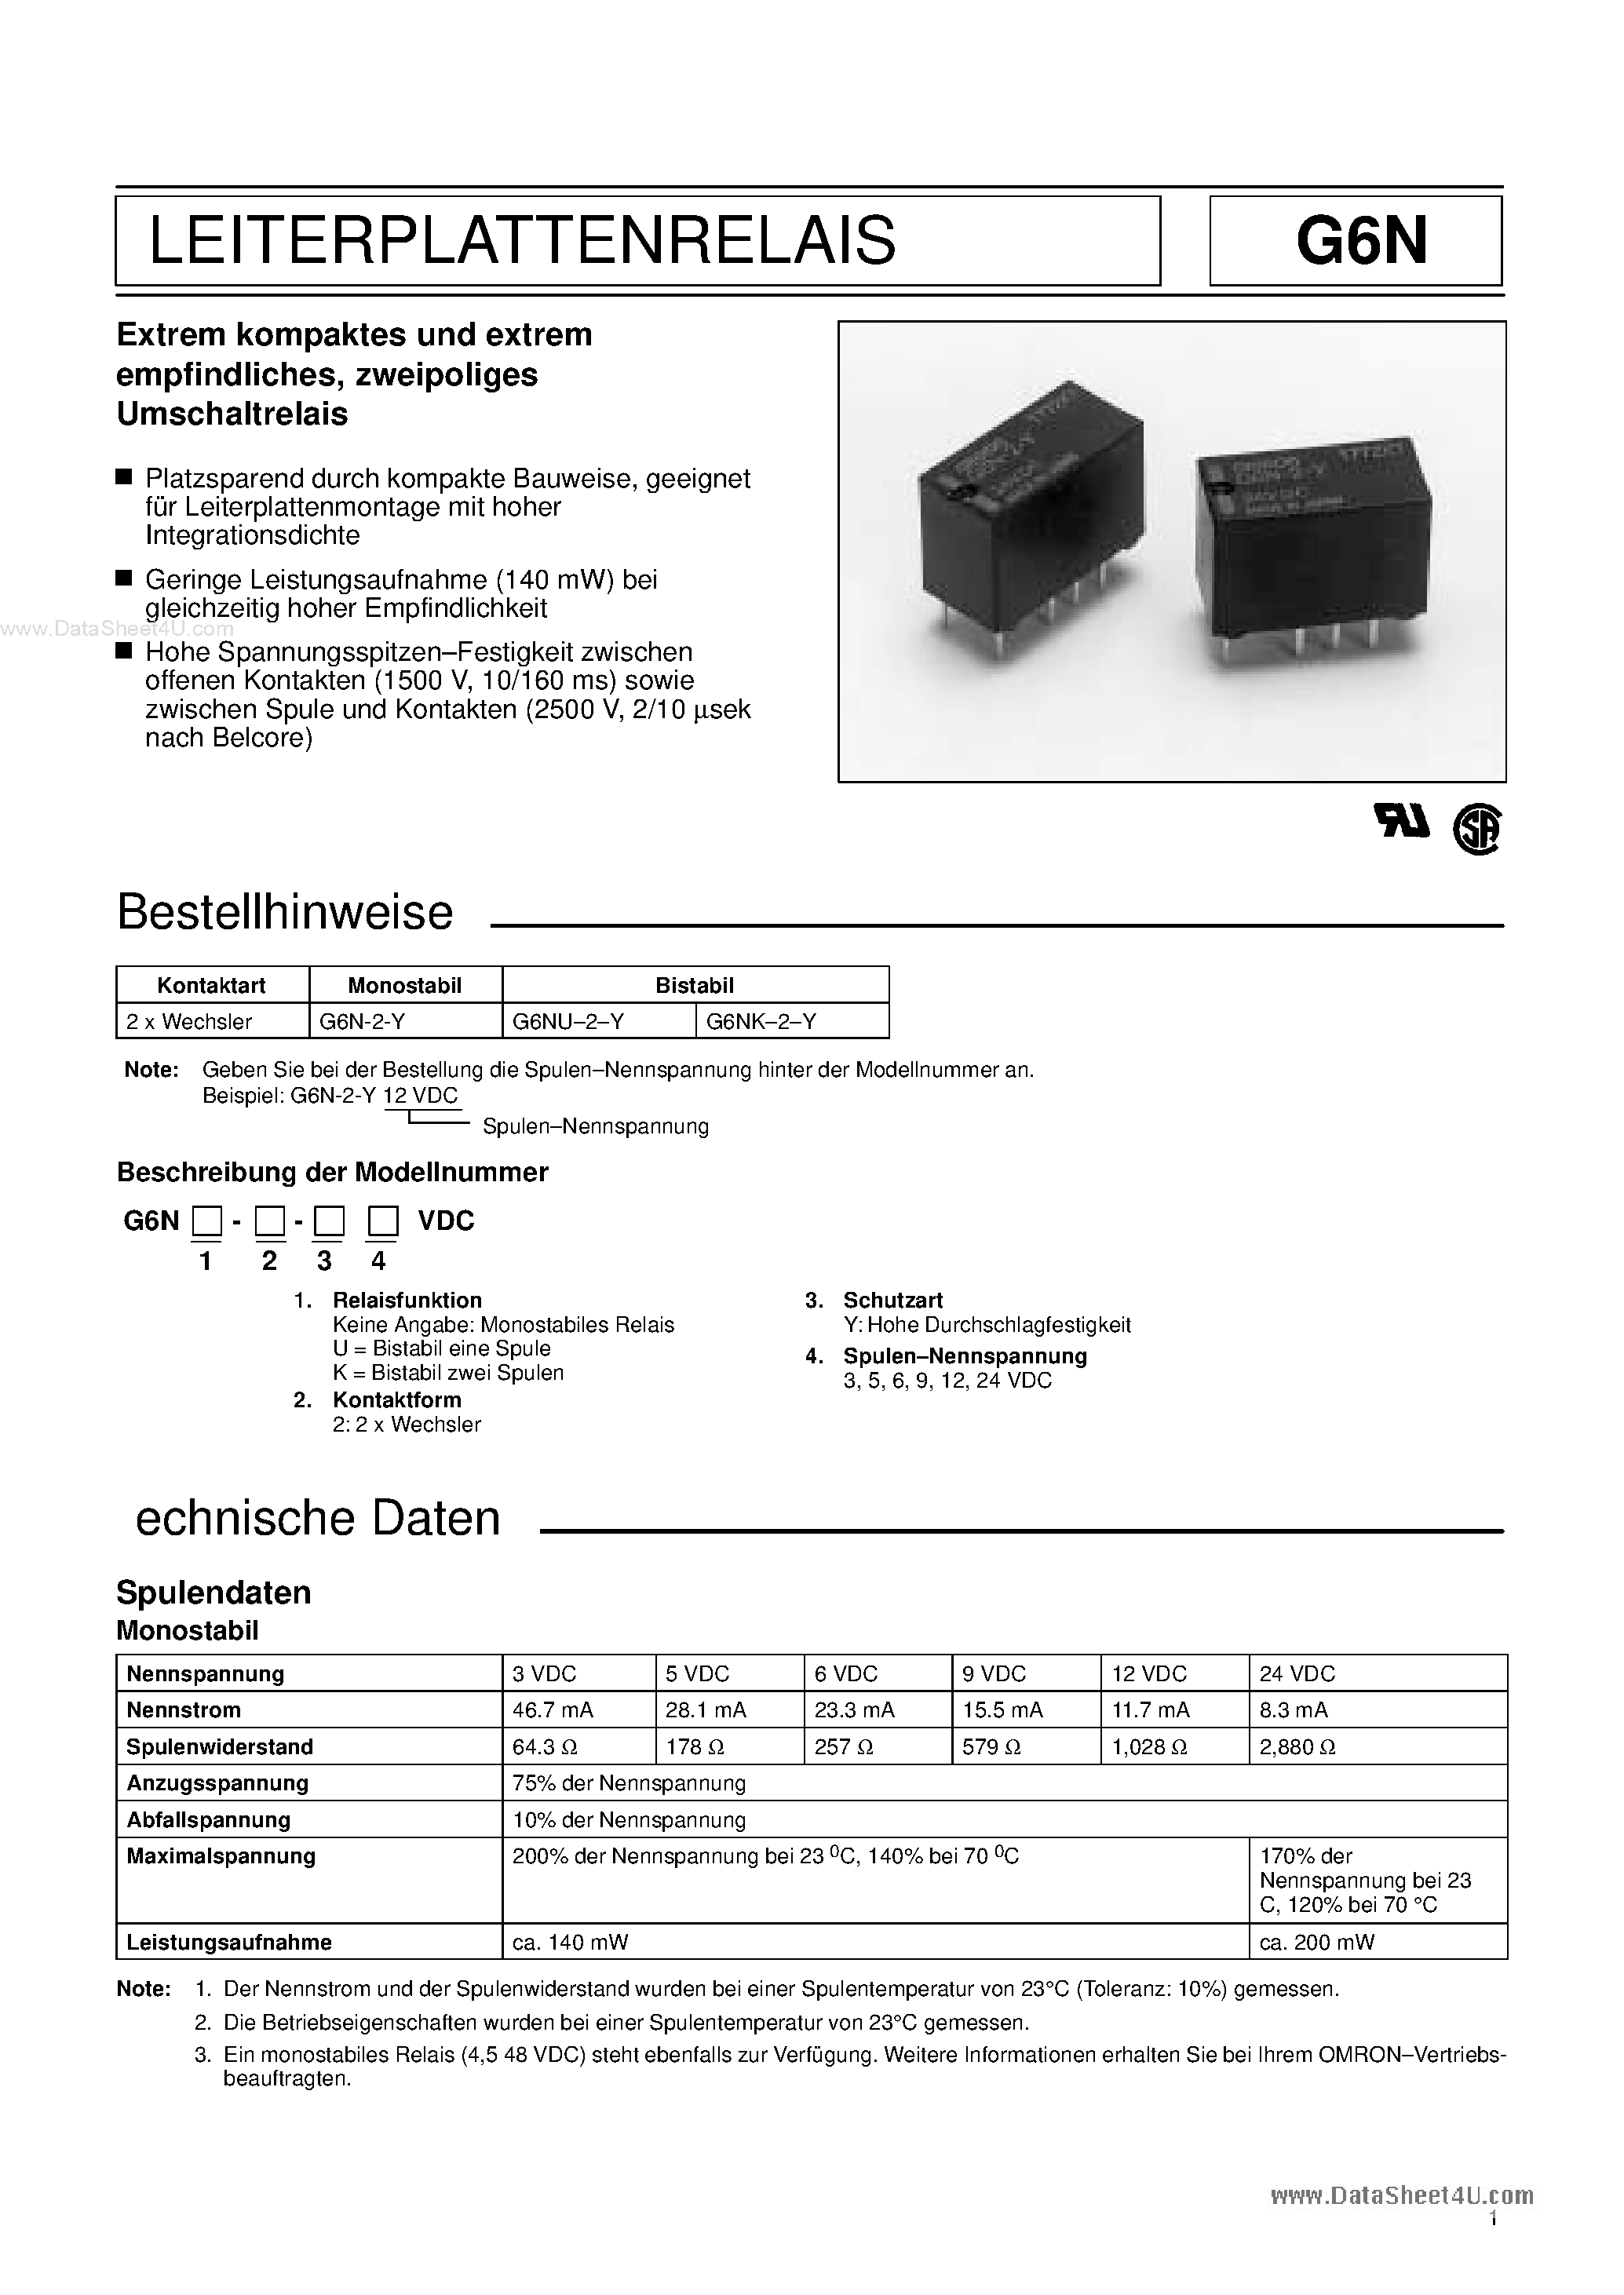 Datasheet G6N - Leiterplattenrelais page 1